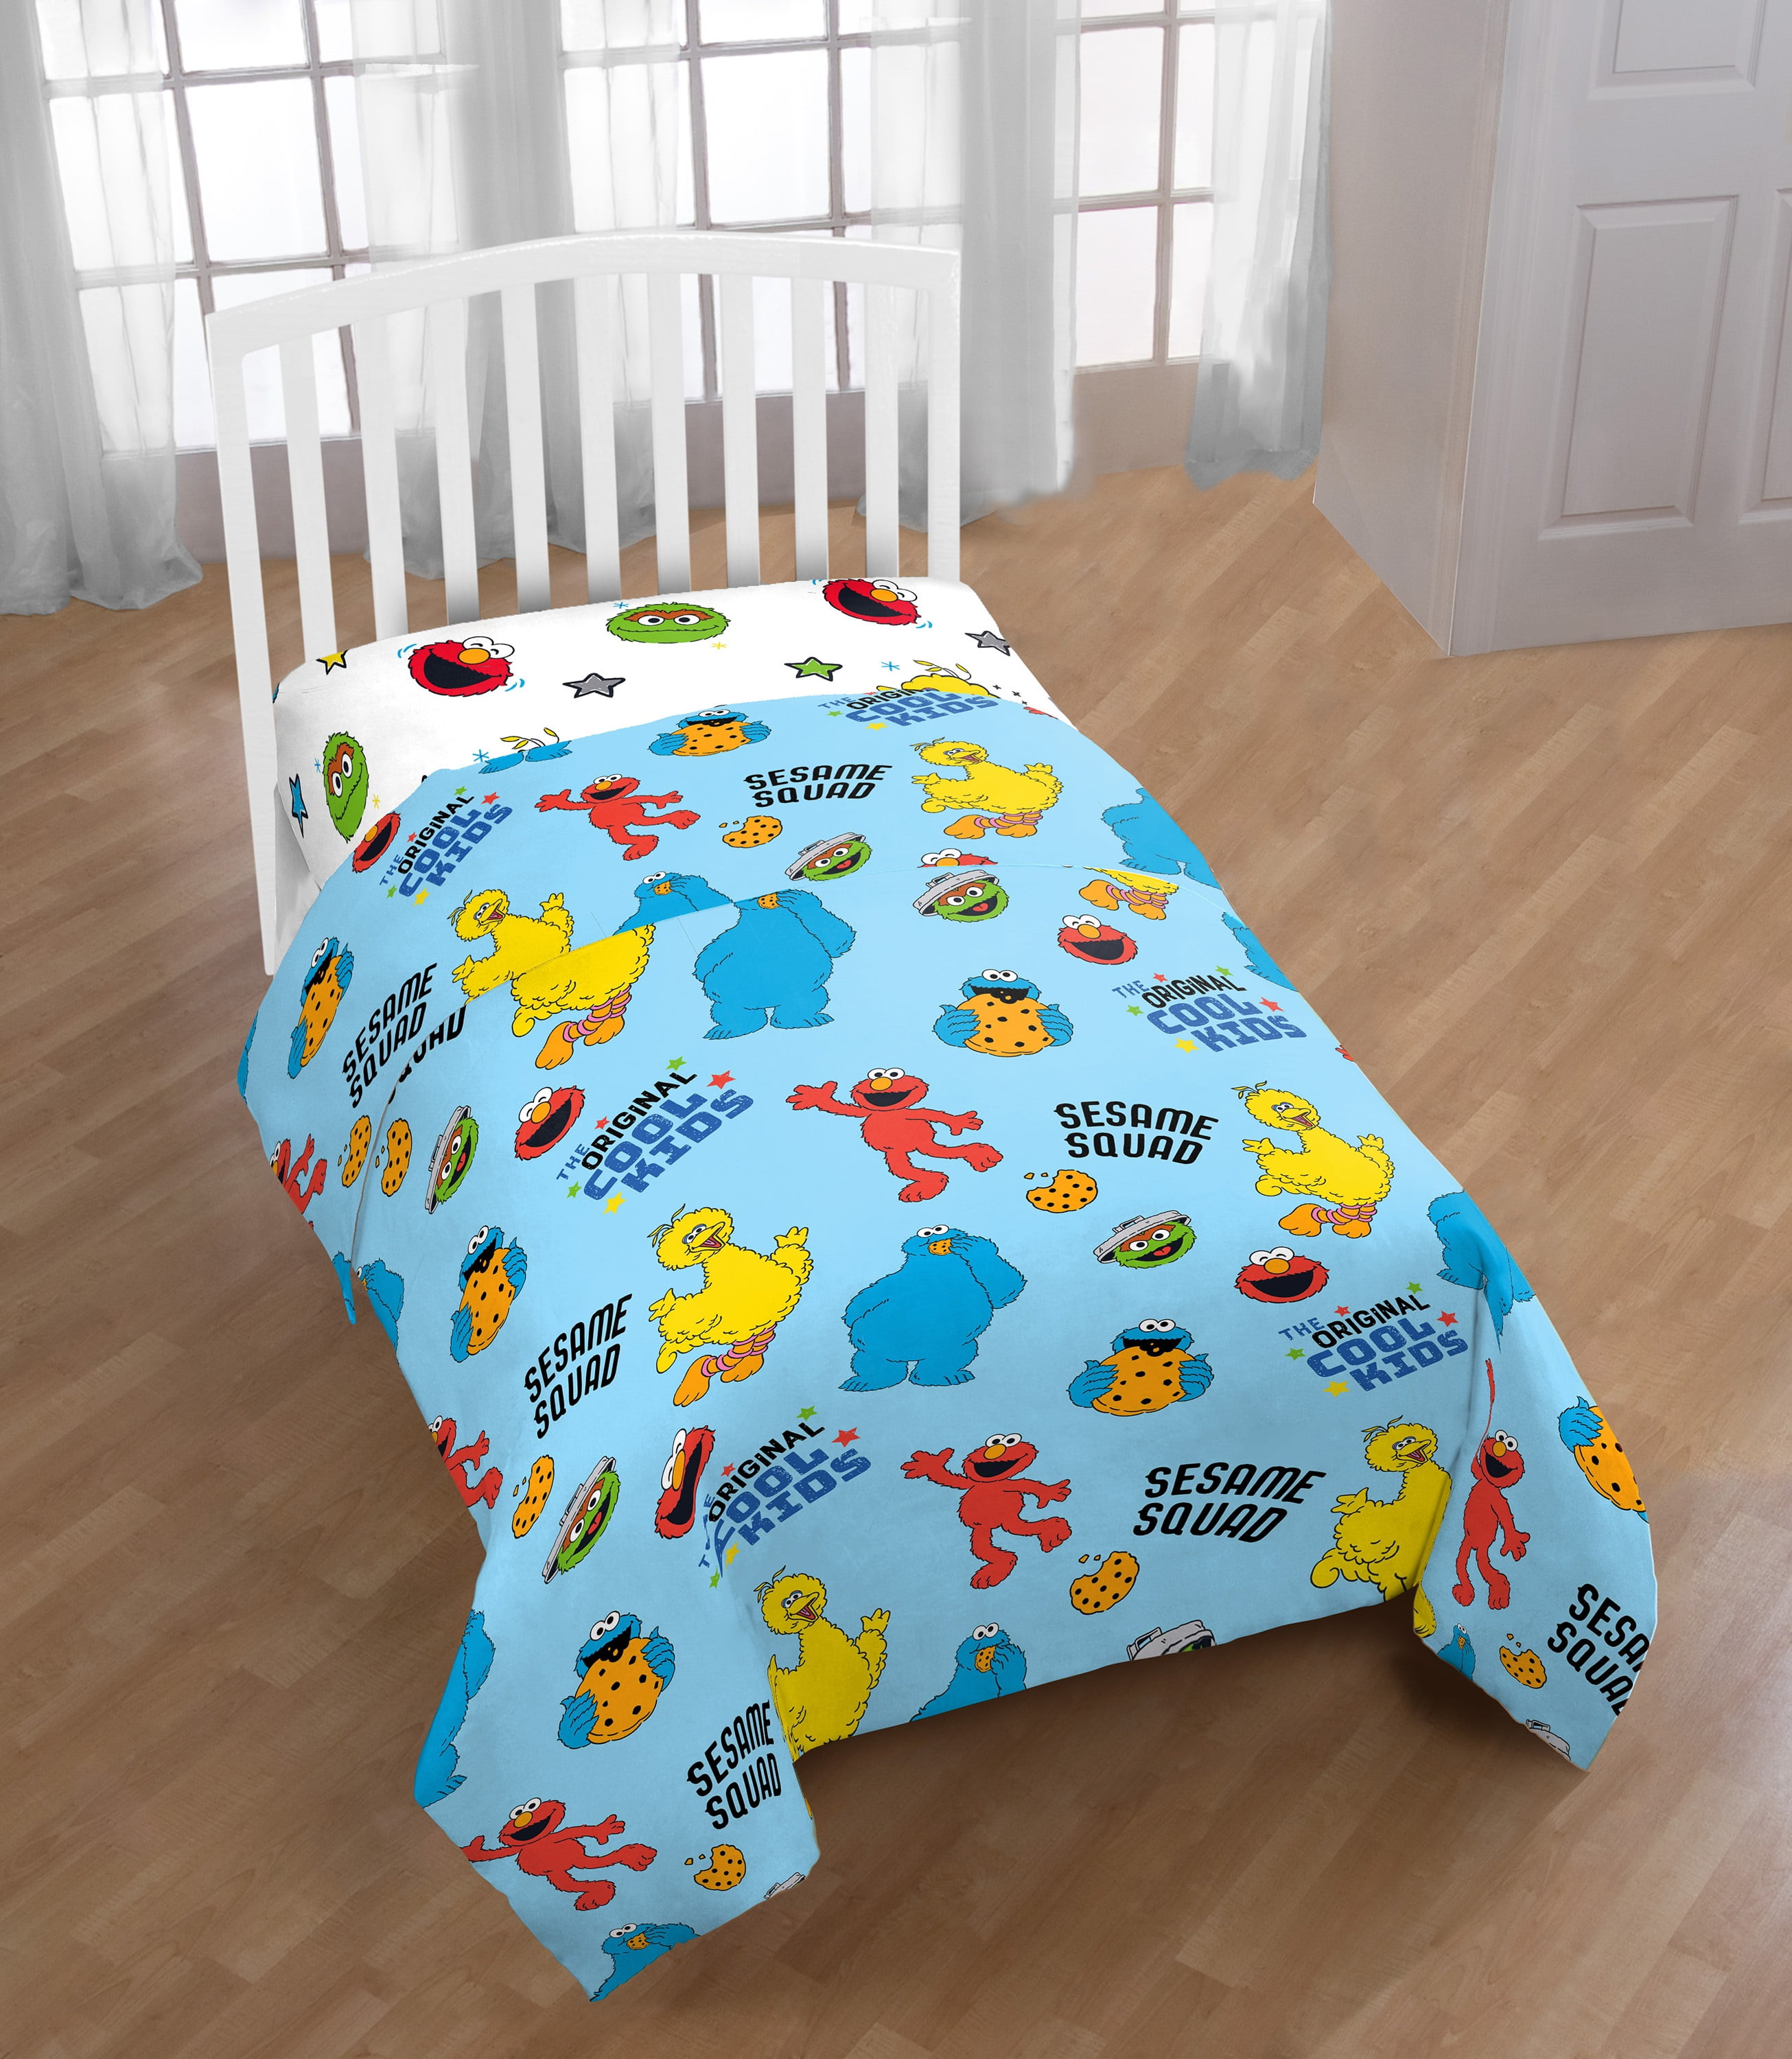 Details about   Sesame Street 3 Piece Microfiber Twin Bedding Sheet Set Pillowcase Elmo Big Bird 